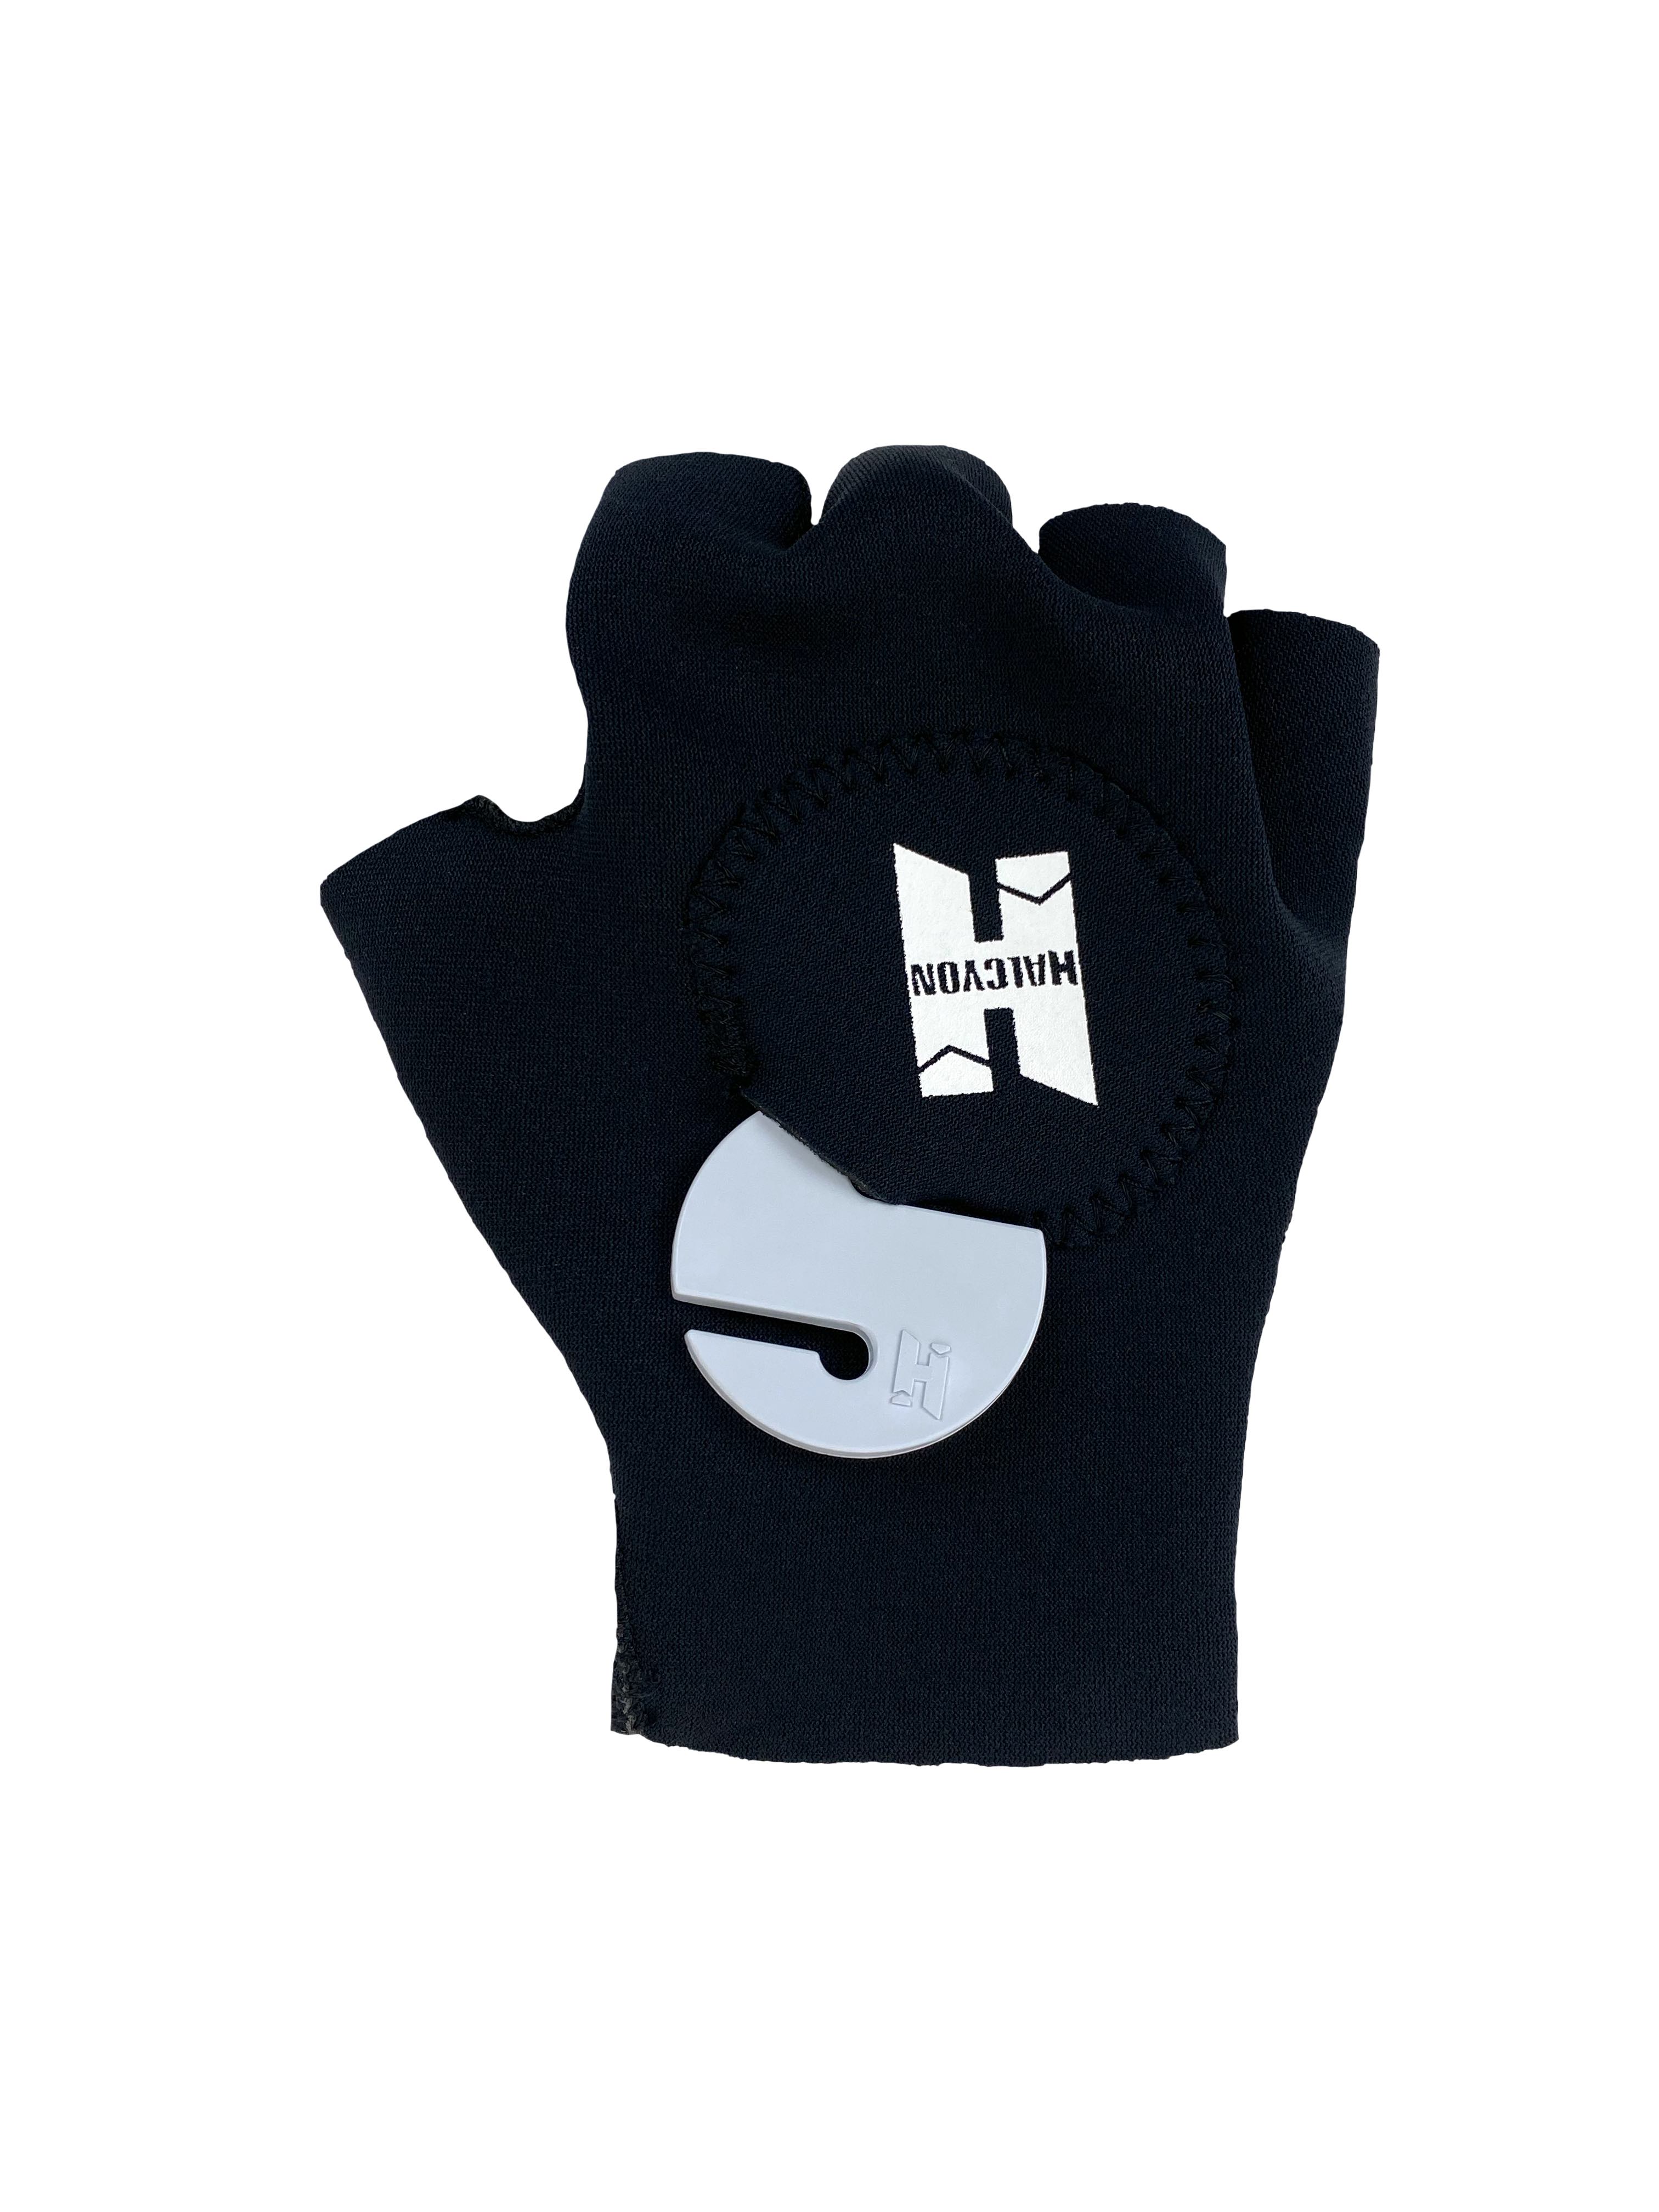 Halcyon Tech Gloves 